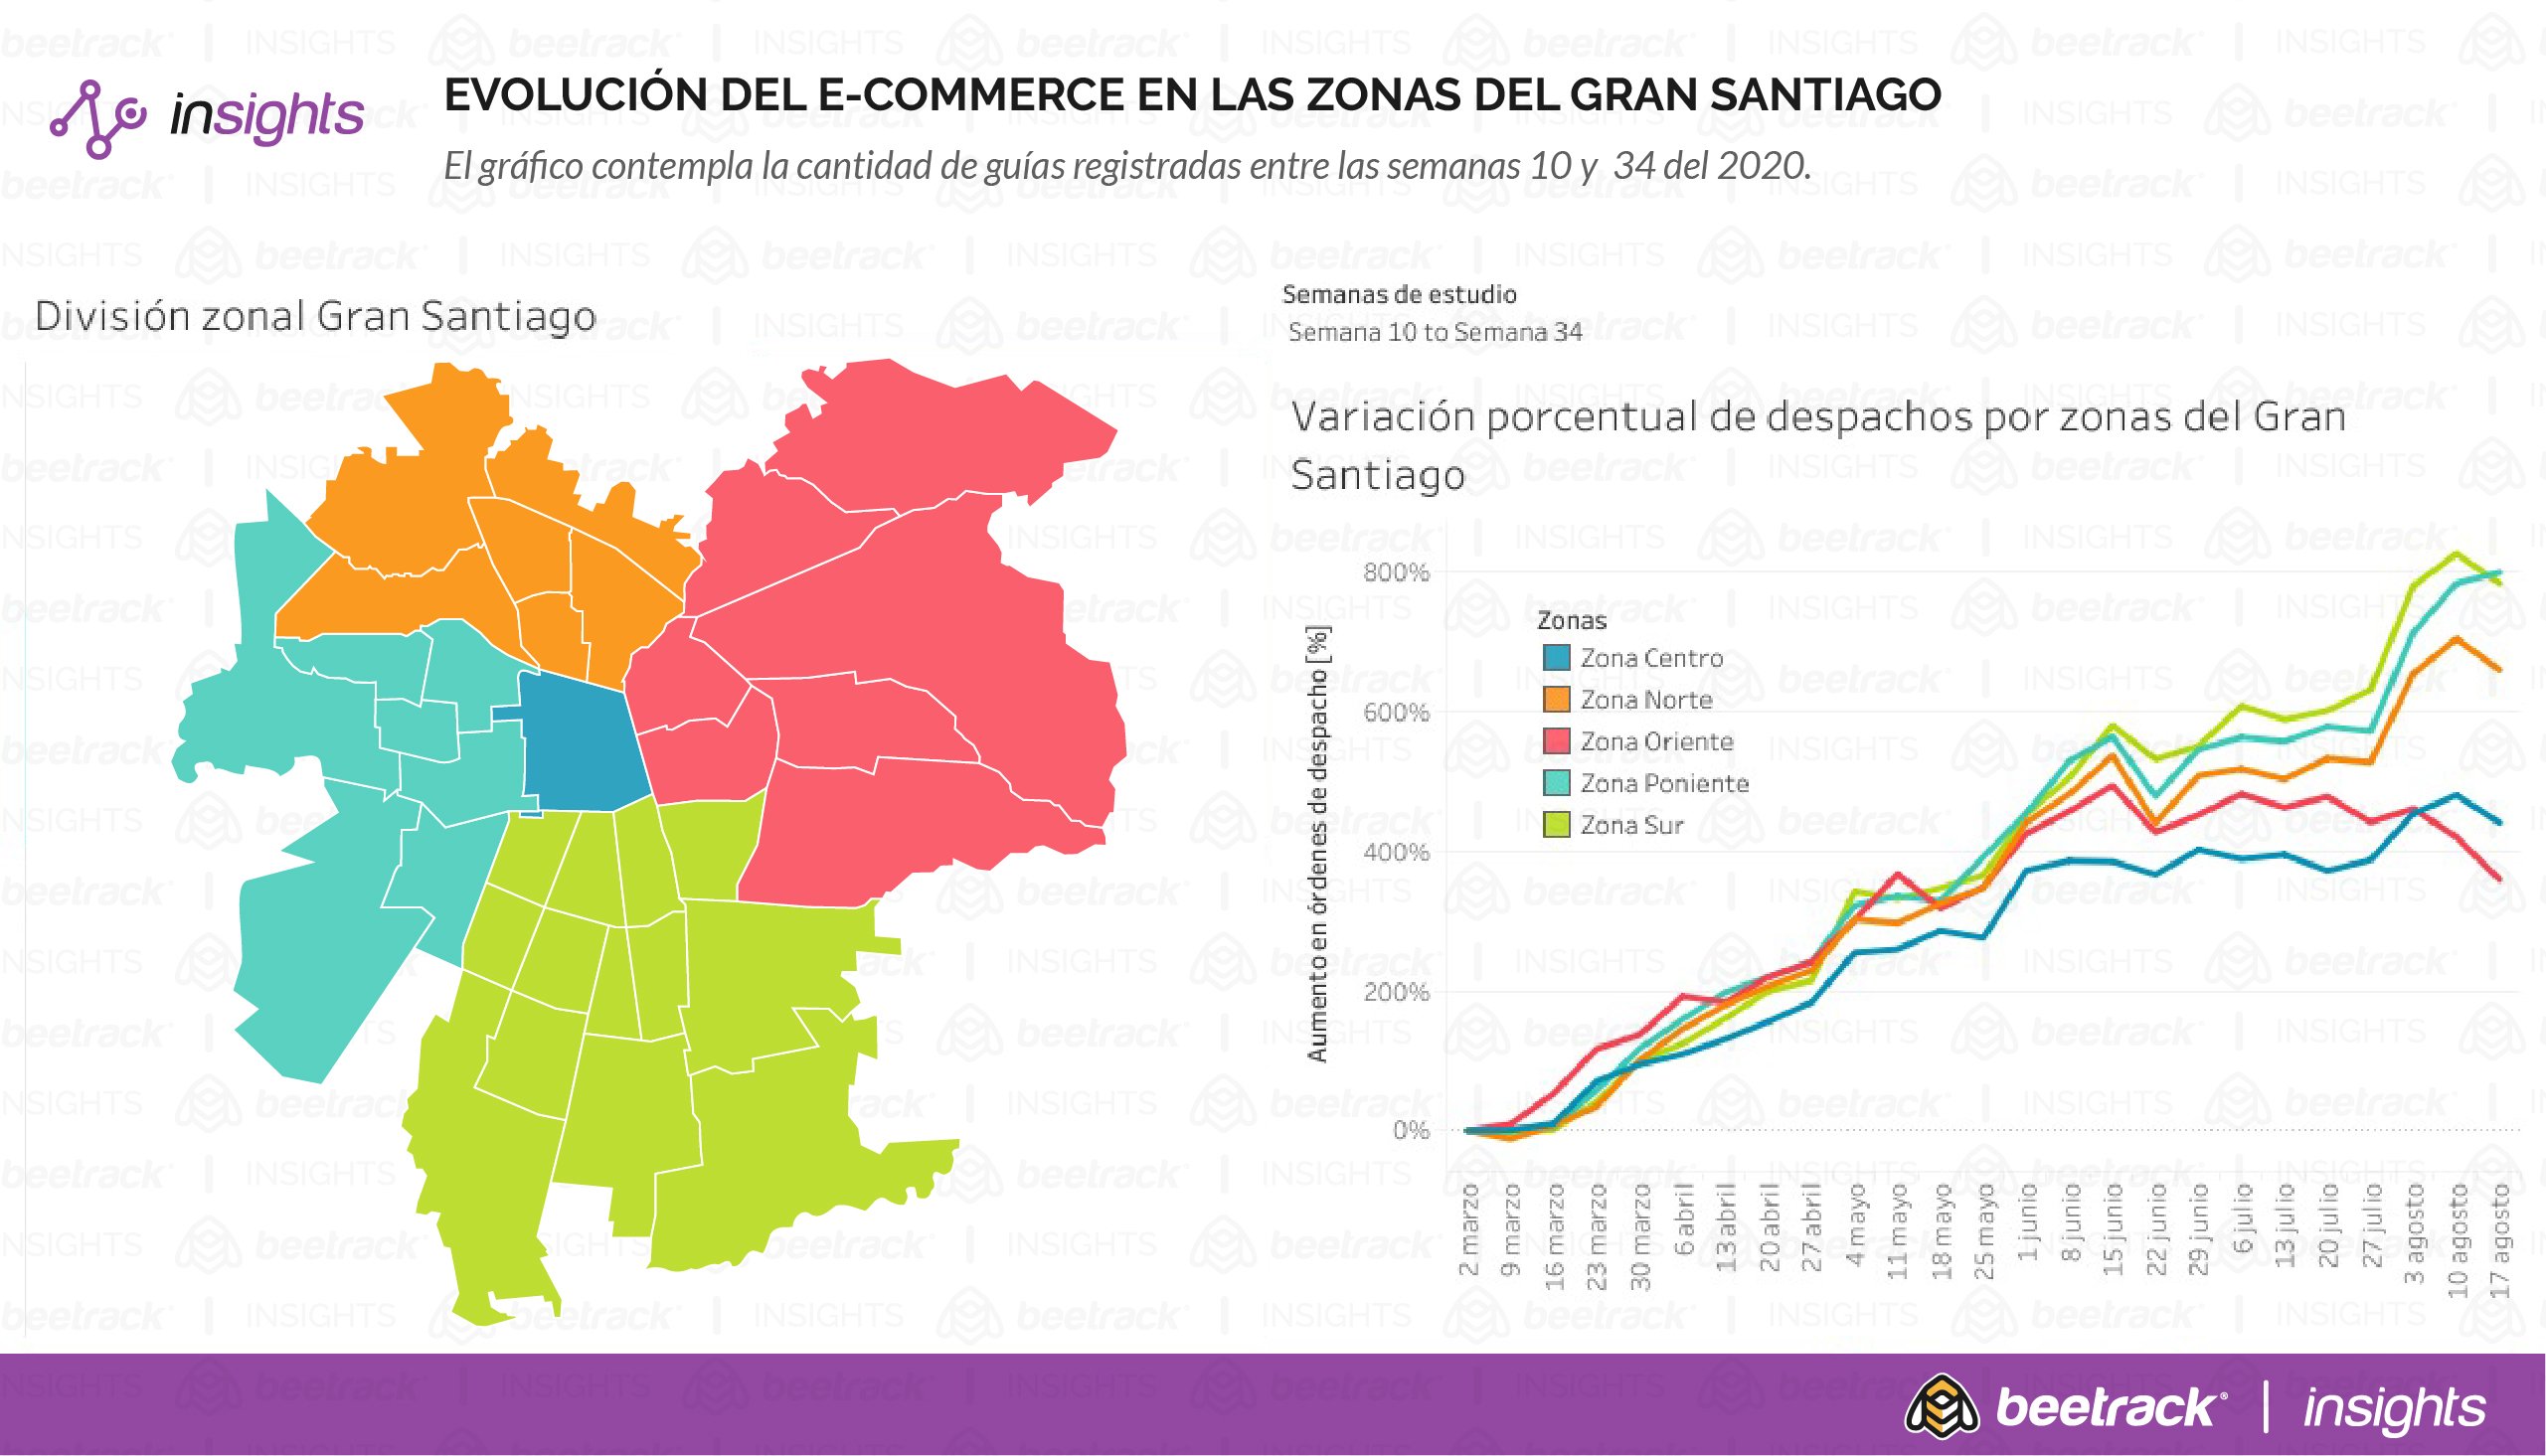 Comunas de Santiago con menor poder adquisitivo registran fuerte crecimiento de e-commerce tras retiro del 10%